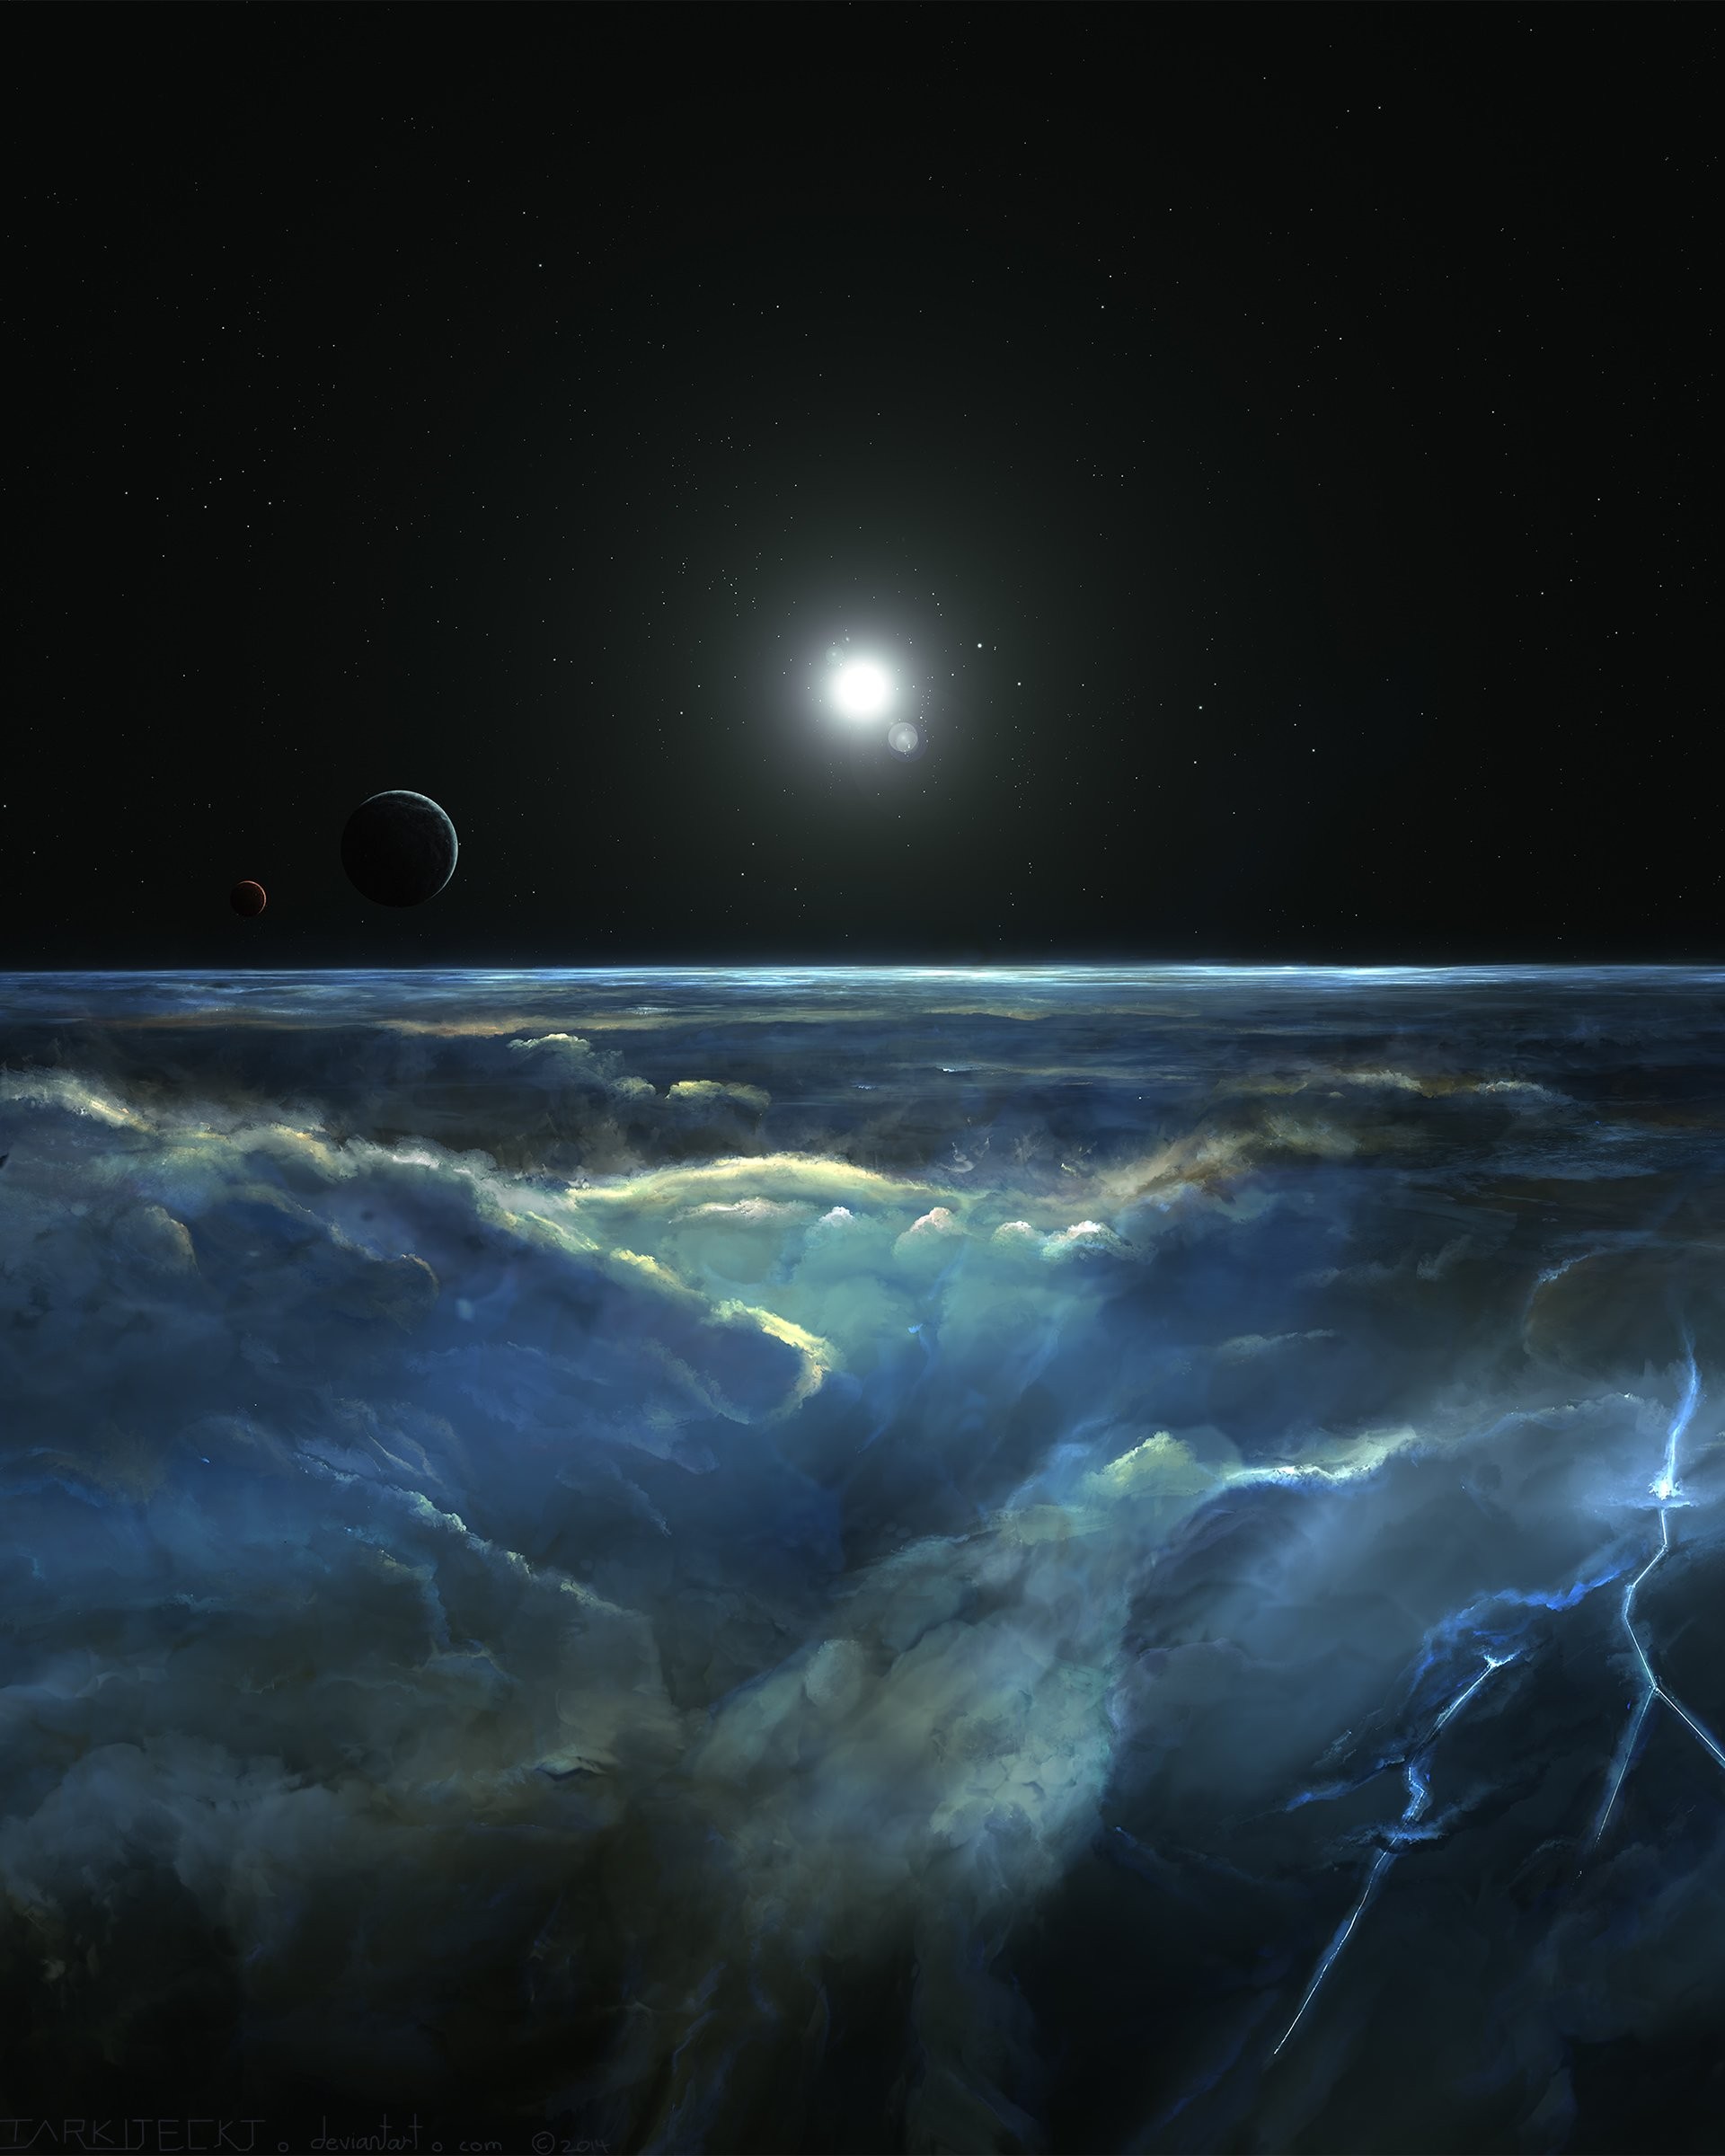 Stormy Atmosphere of Merphlyn Wallpaper for Google Nexus 7